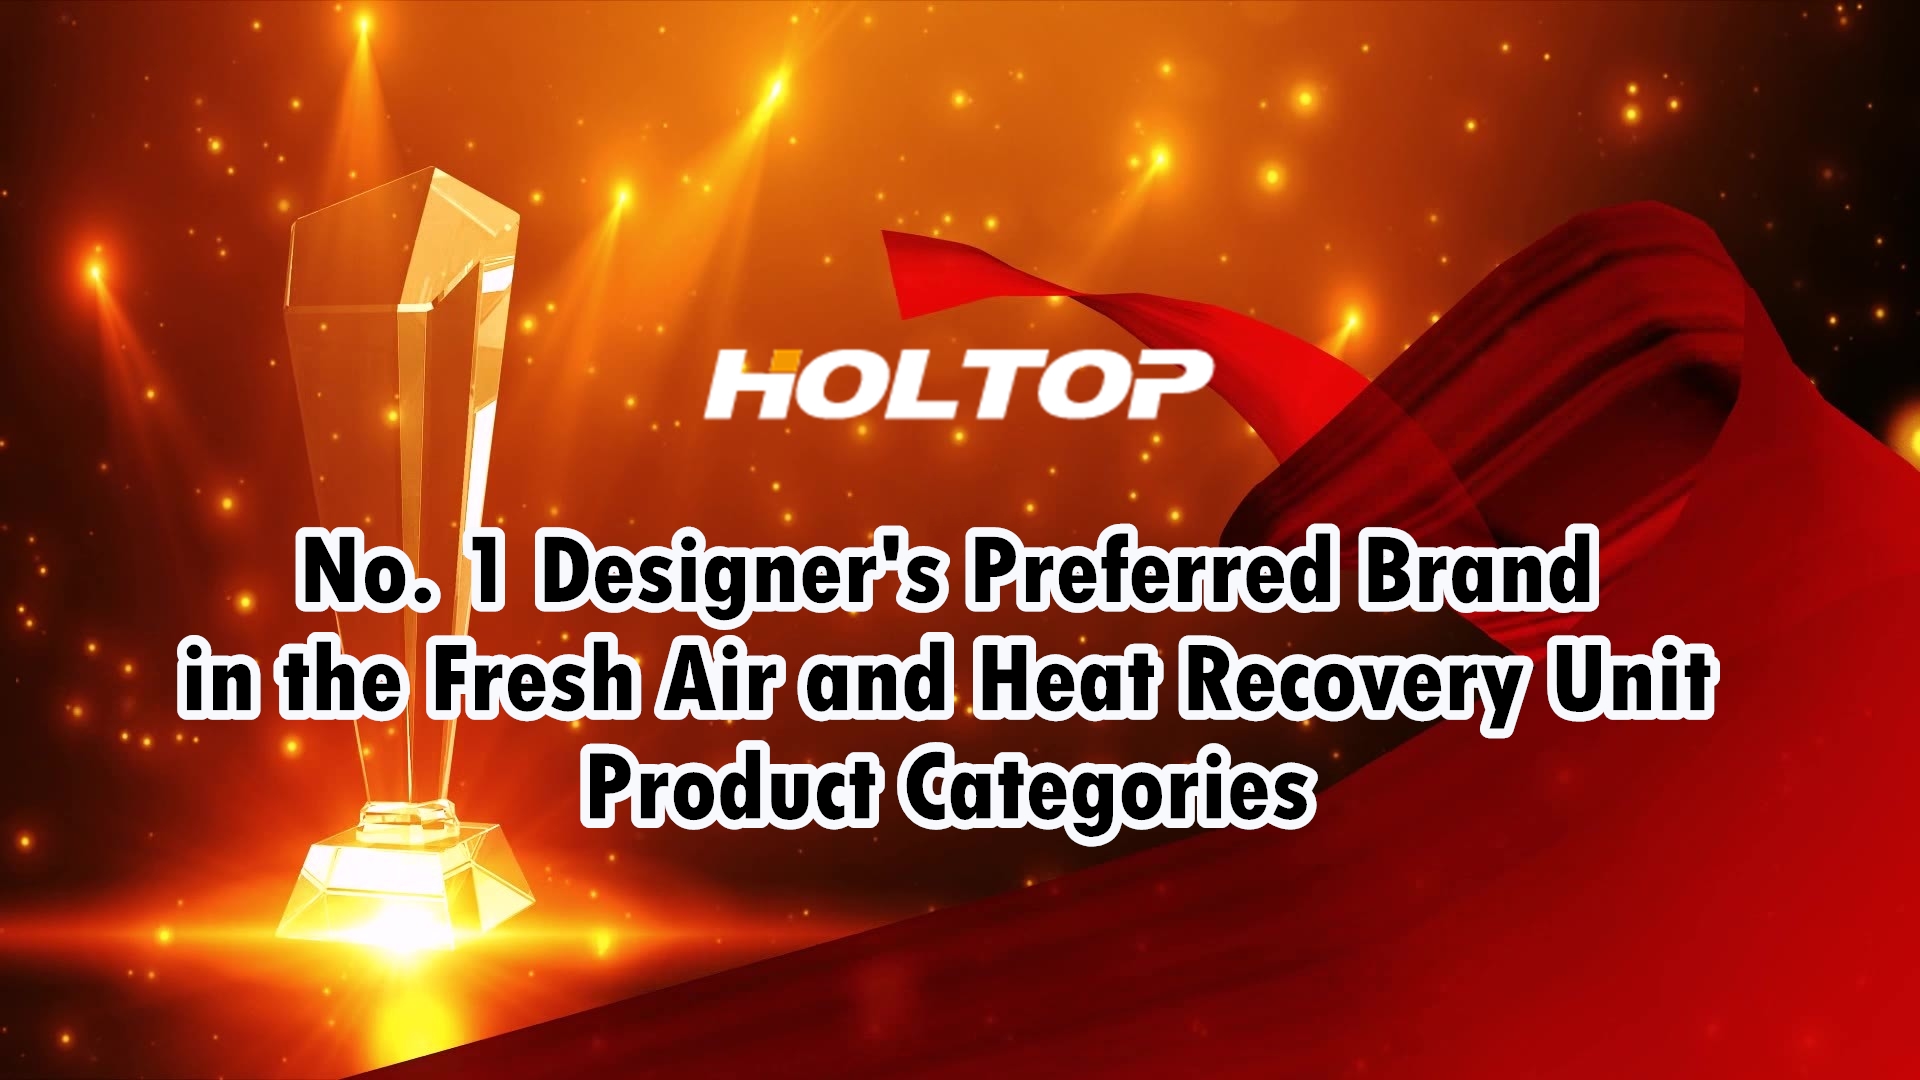 HOLTOP, Çin Pazarında Taze Hava ve Isı Geri Kazanım Ünitesi Ürün Kategorilerinde Tasarımcıların 1 Numaralı Tercih ettiği Markadır